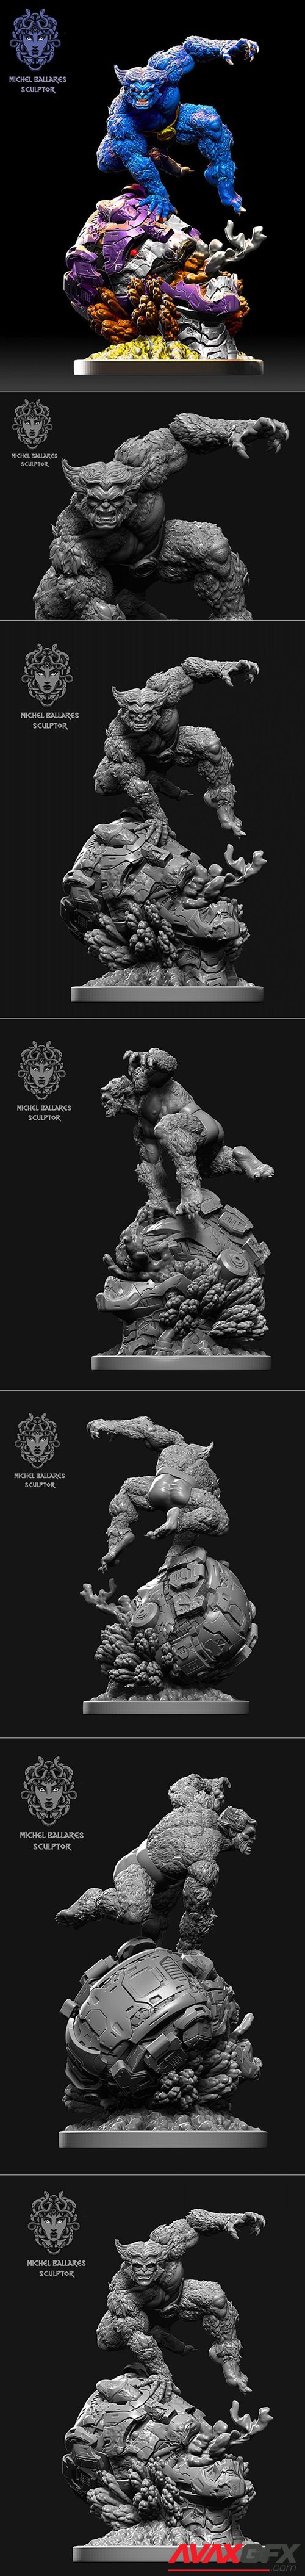 X-men beast by Creative geek MB – 3D Printable STL